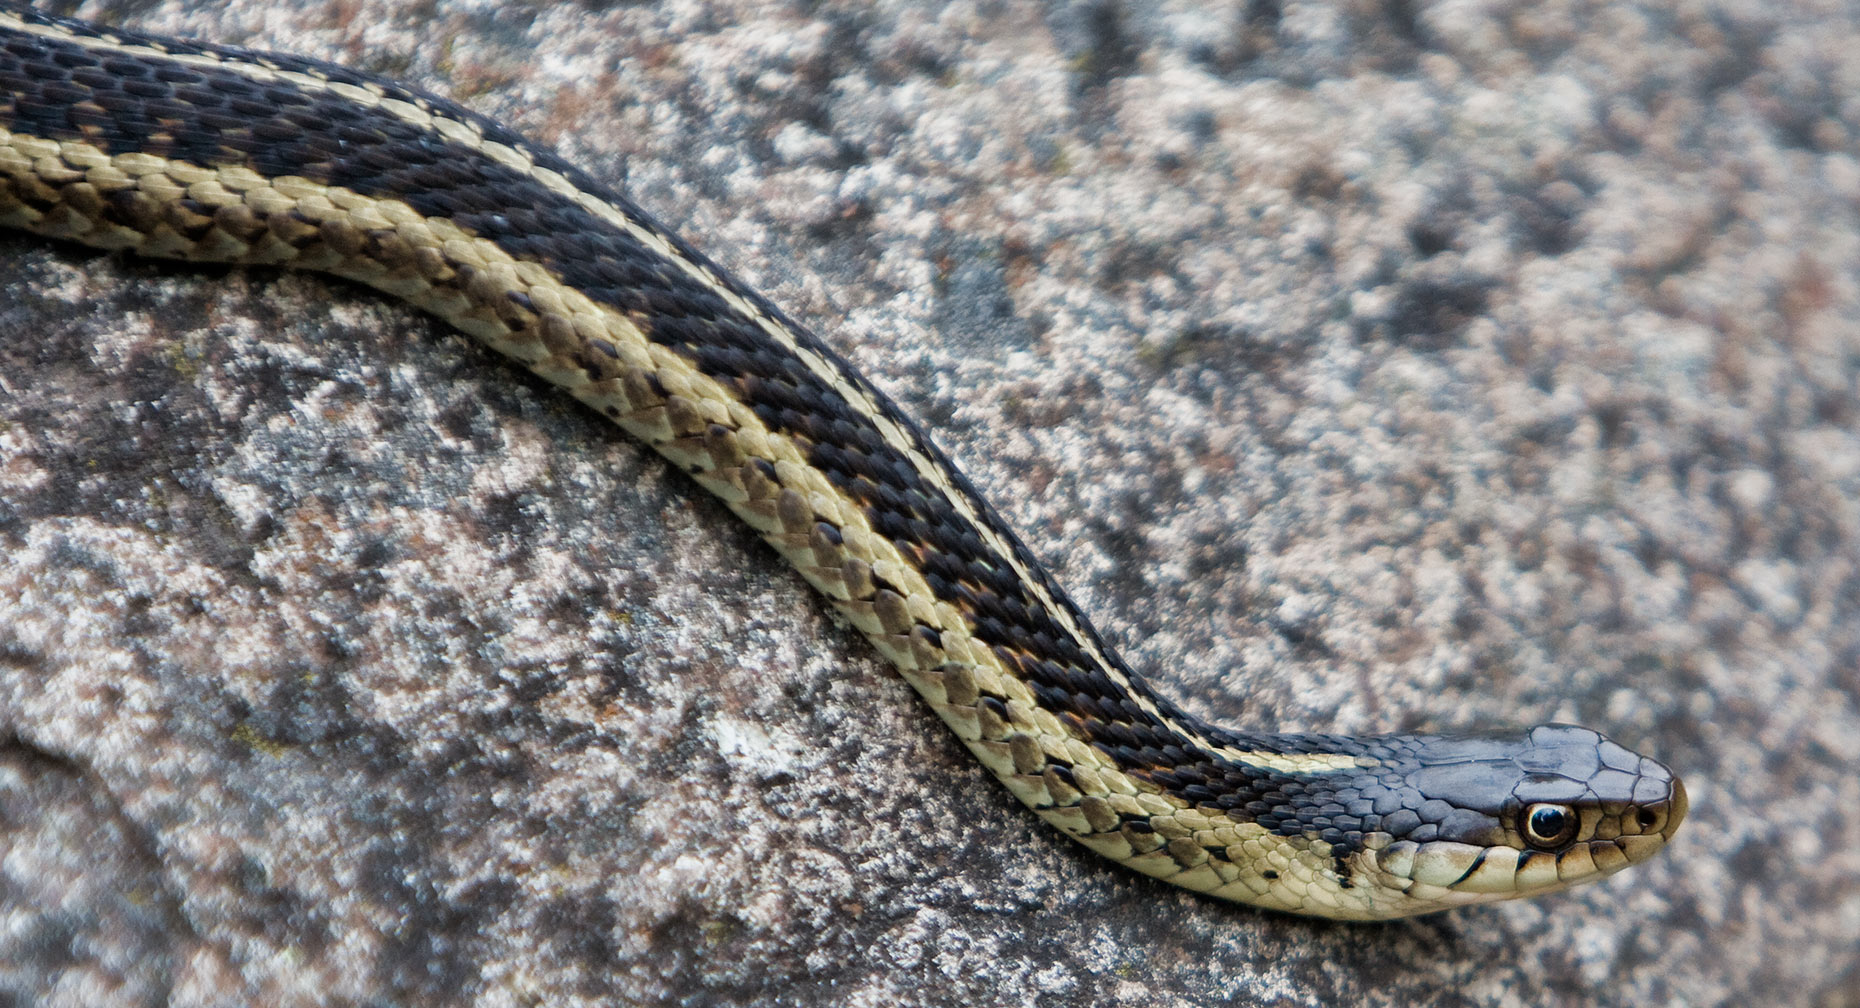 isleroyale-snake